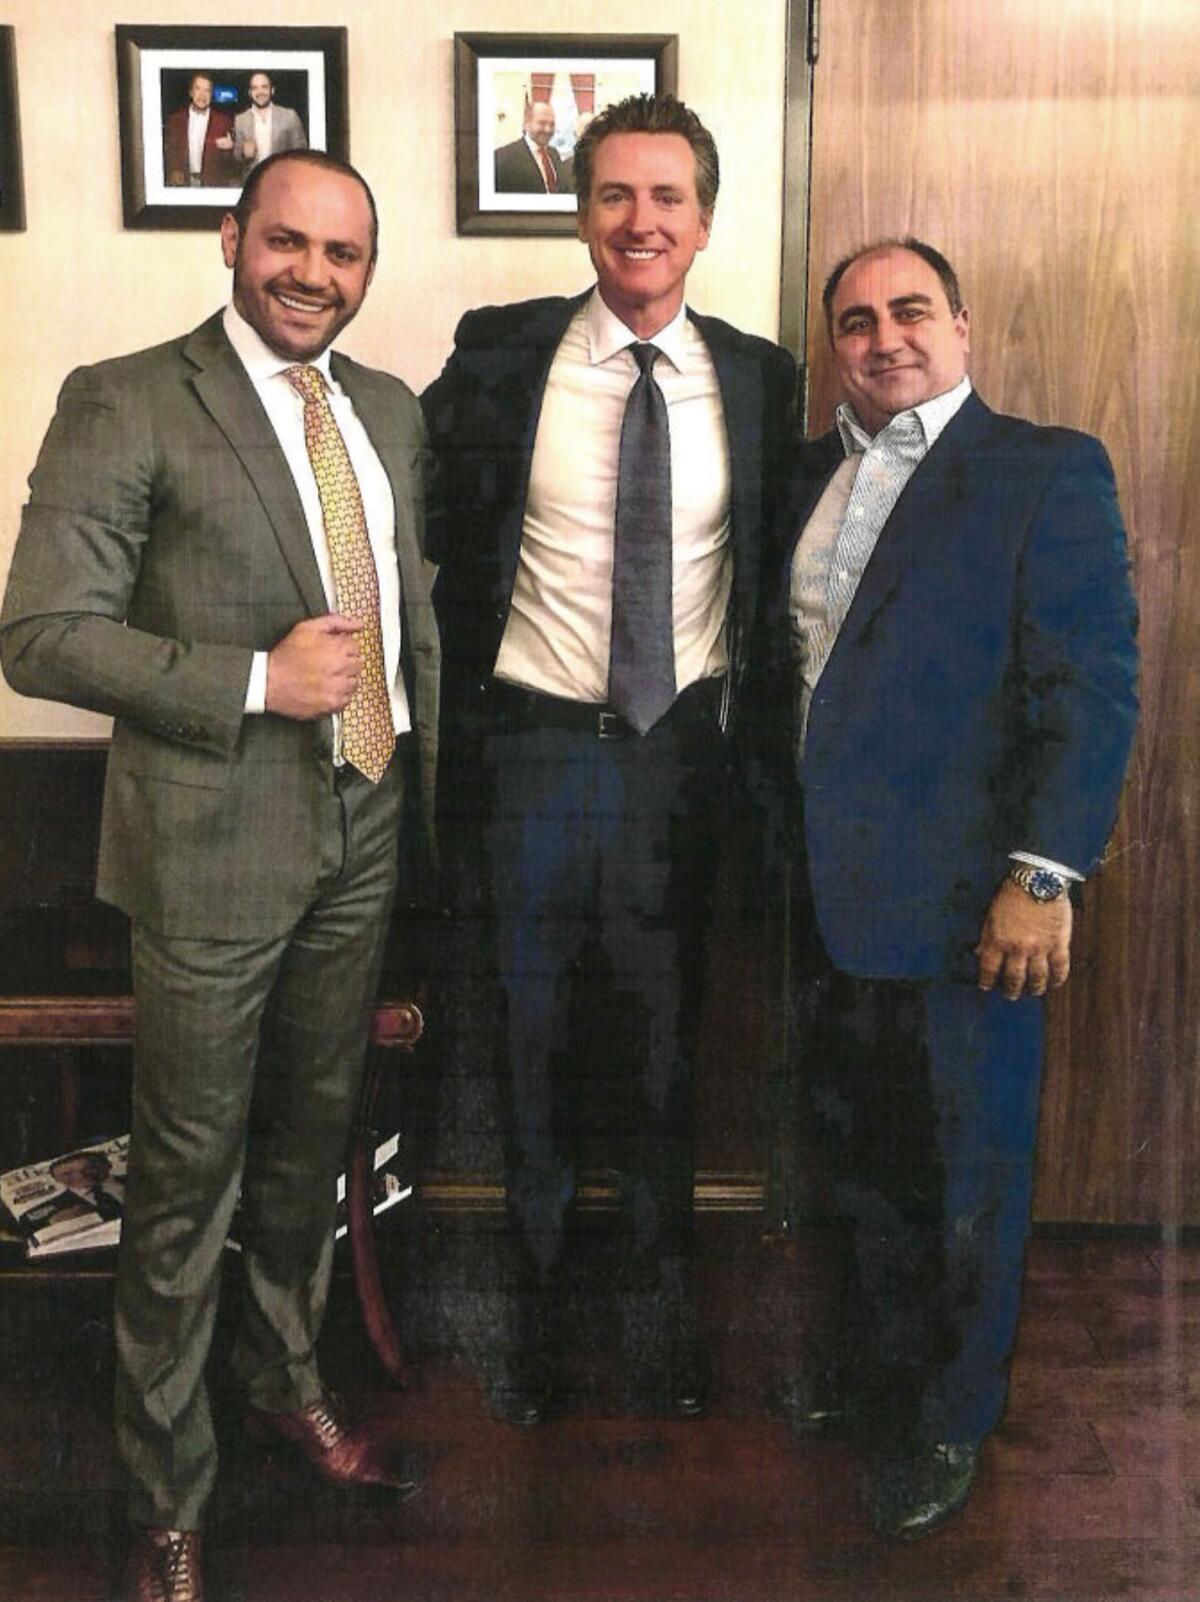 Edgar Sargsyan and John Balian with Gavin Newsom